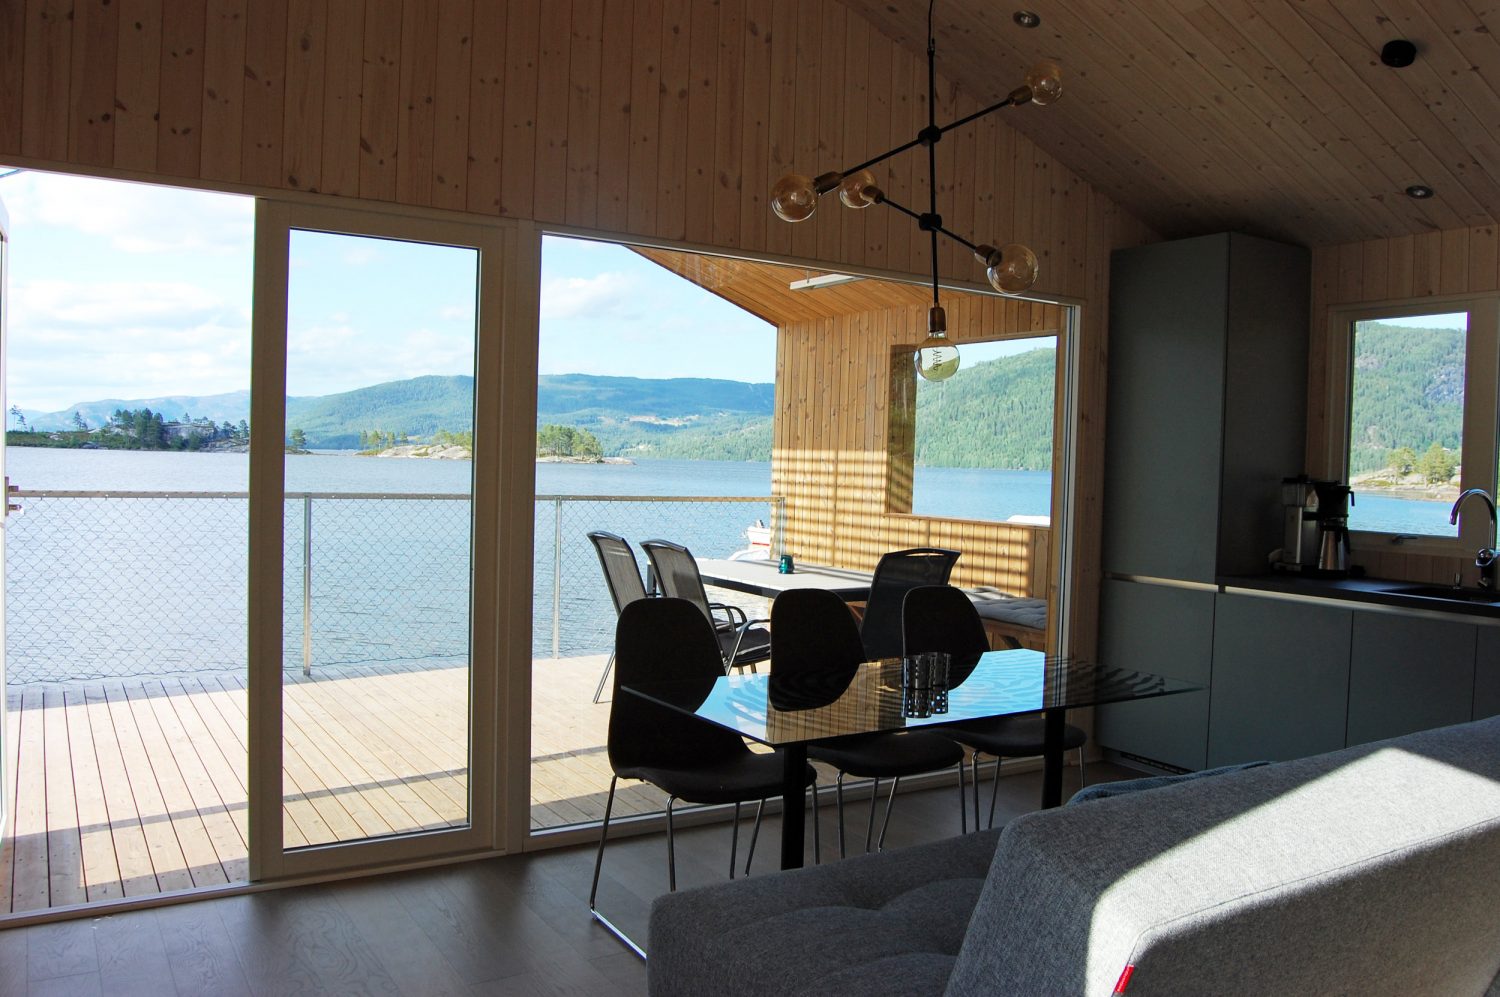 Nisser Micro Cabin by Feste Landscape / Architecture